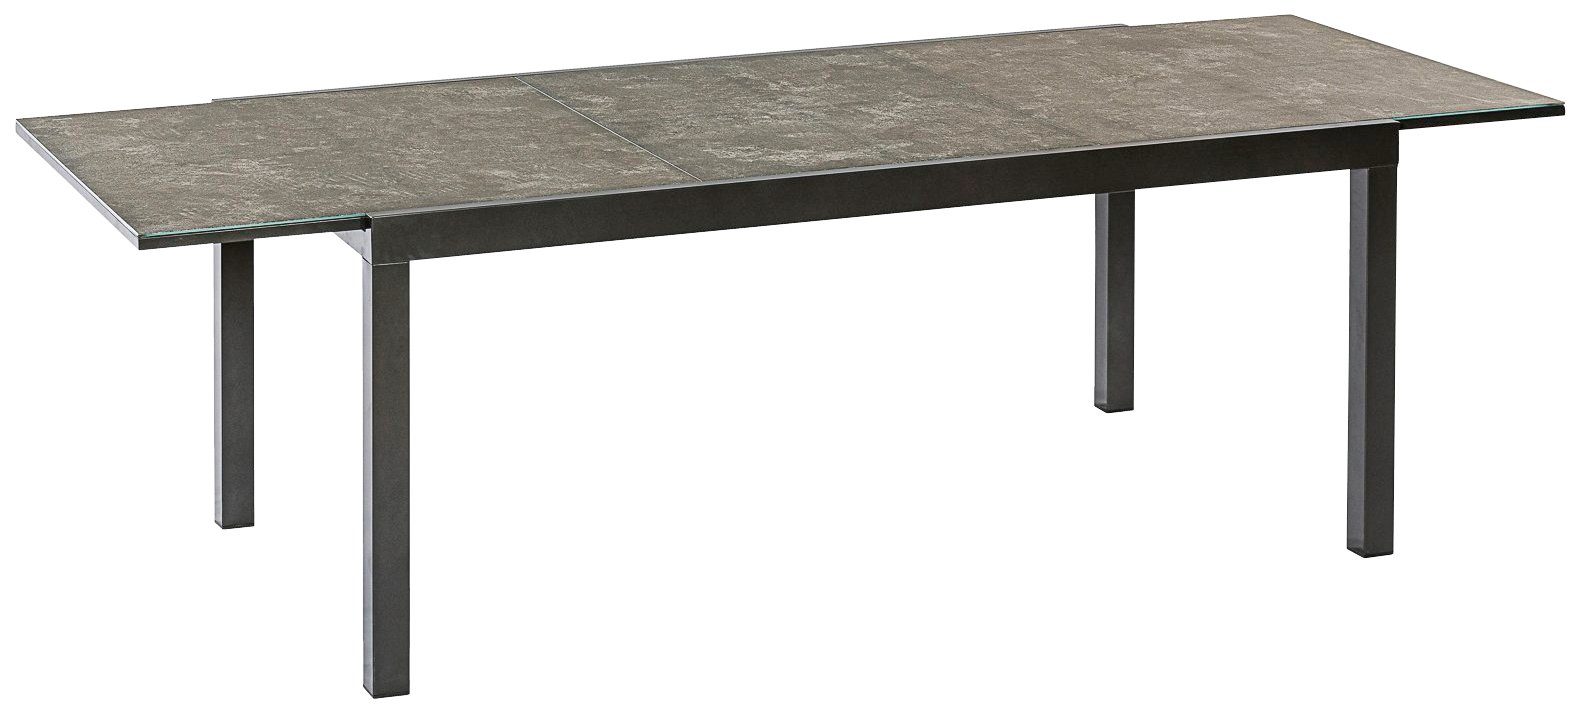 MERXX Semi 100x180 cm AZ-Tisch, Gartentisch